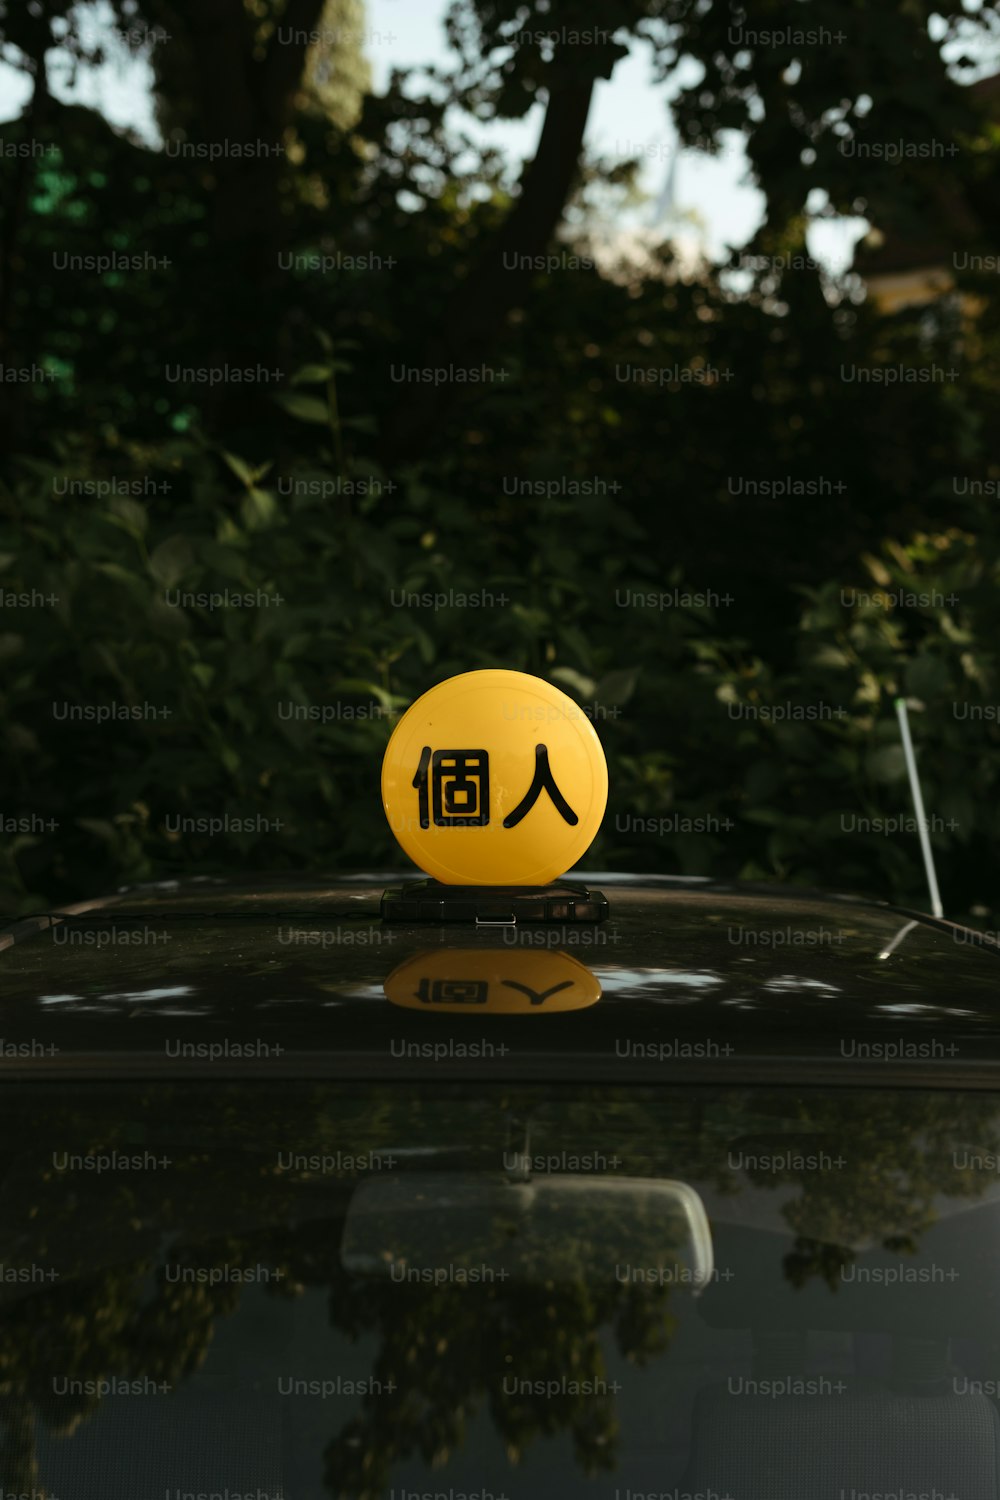 Ein gelbes Smiley-Gesicht auf einem schwarzen Auto